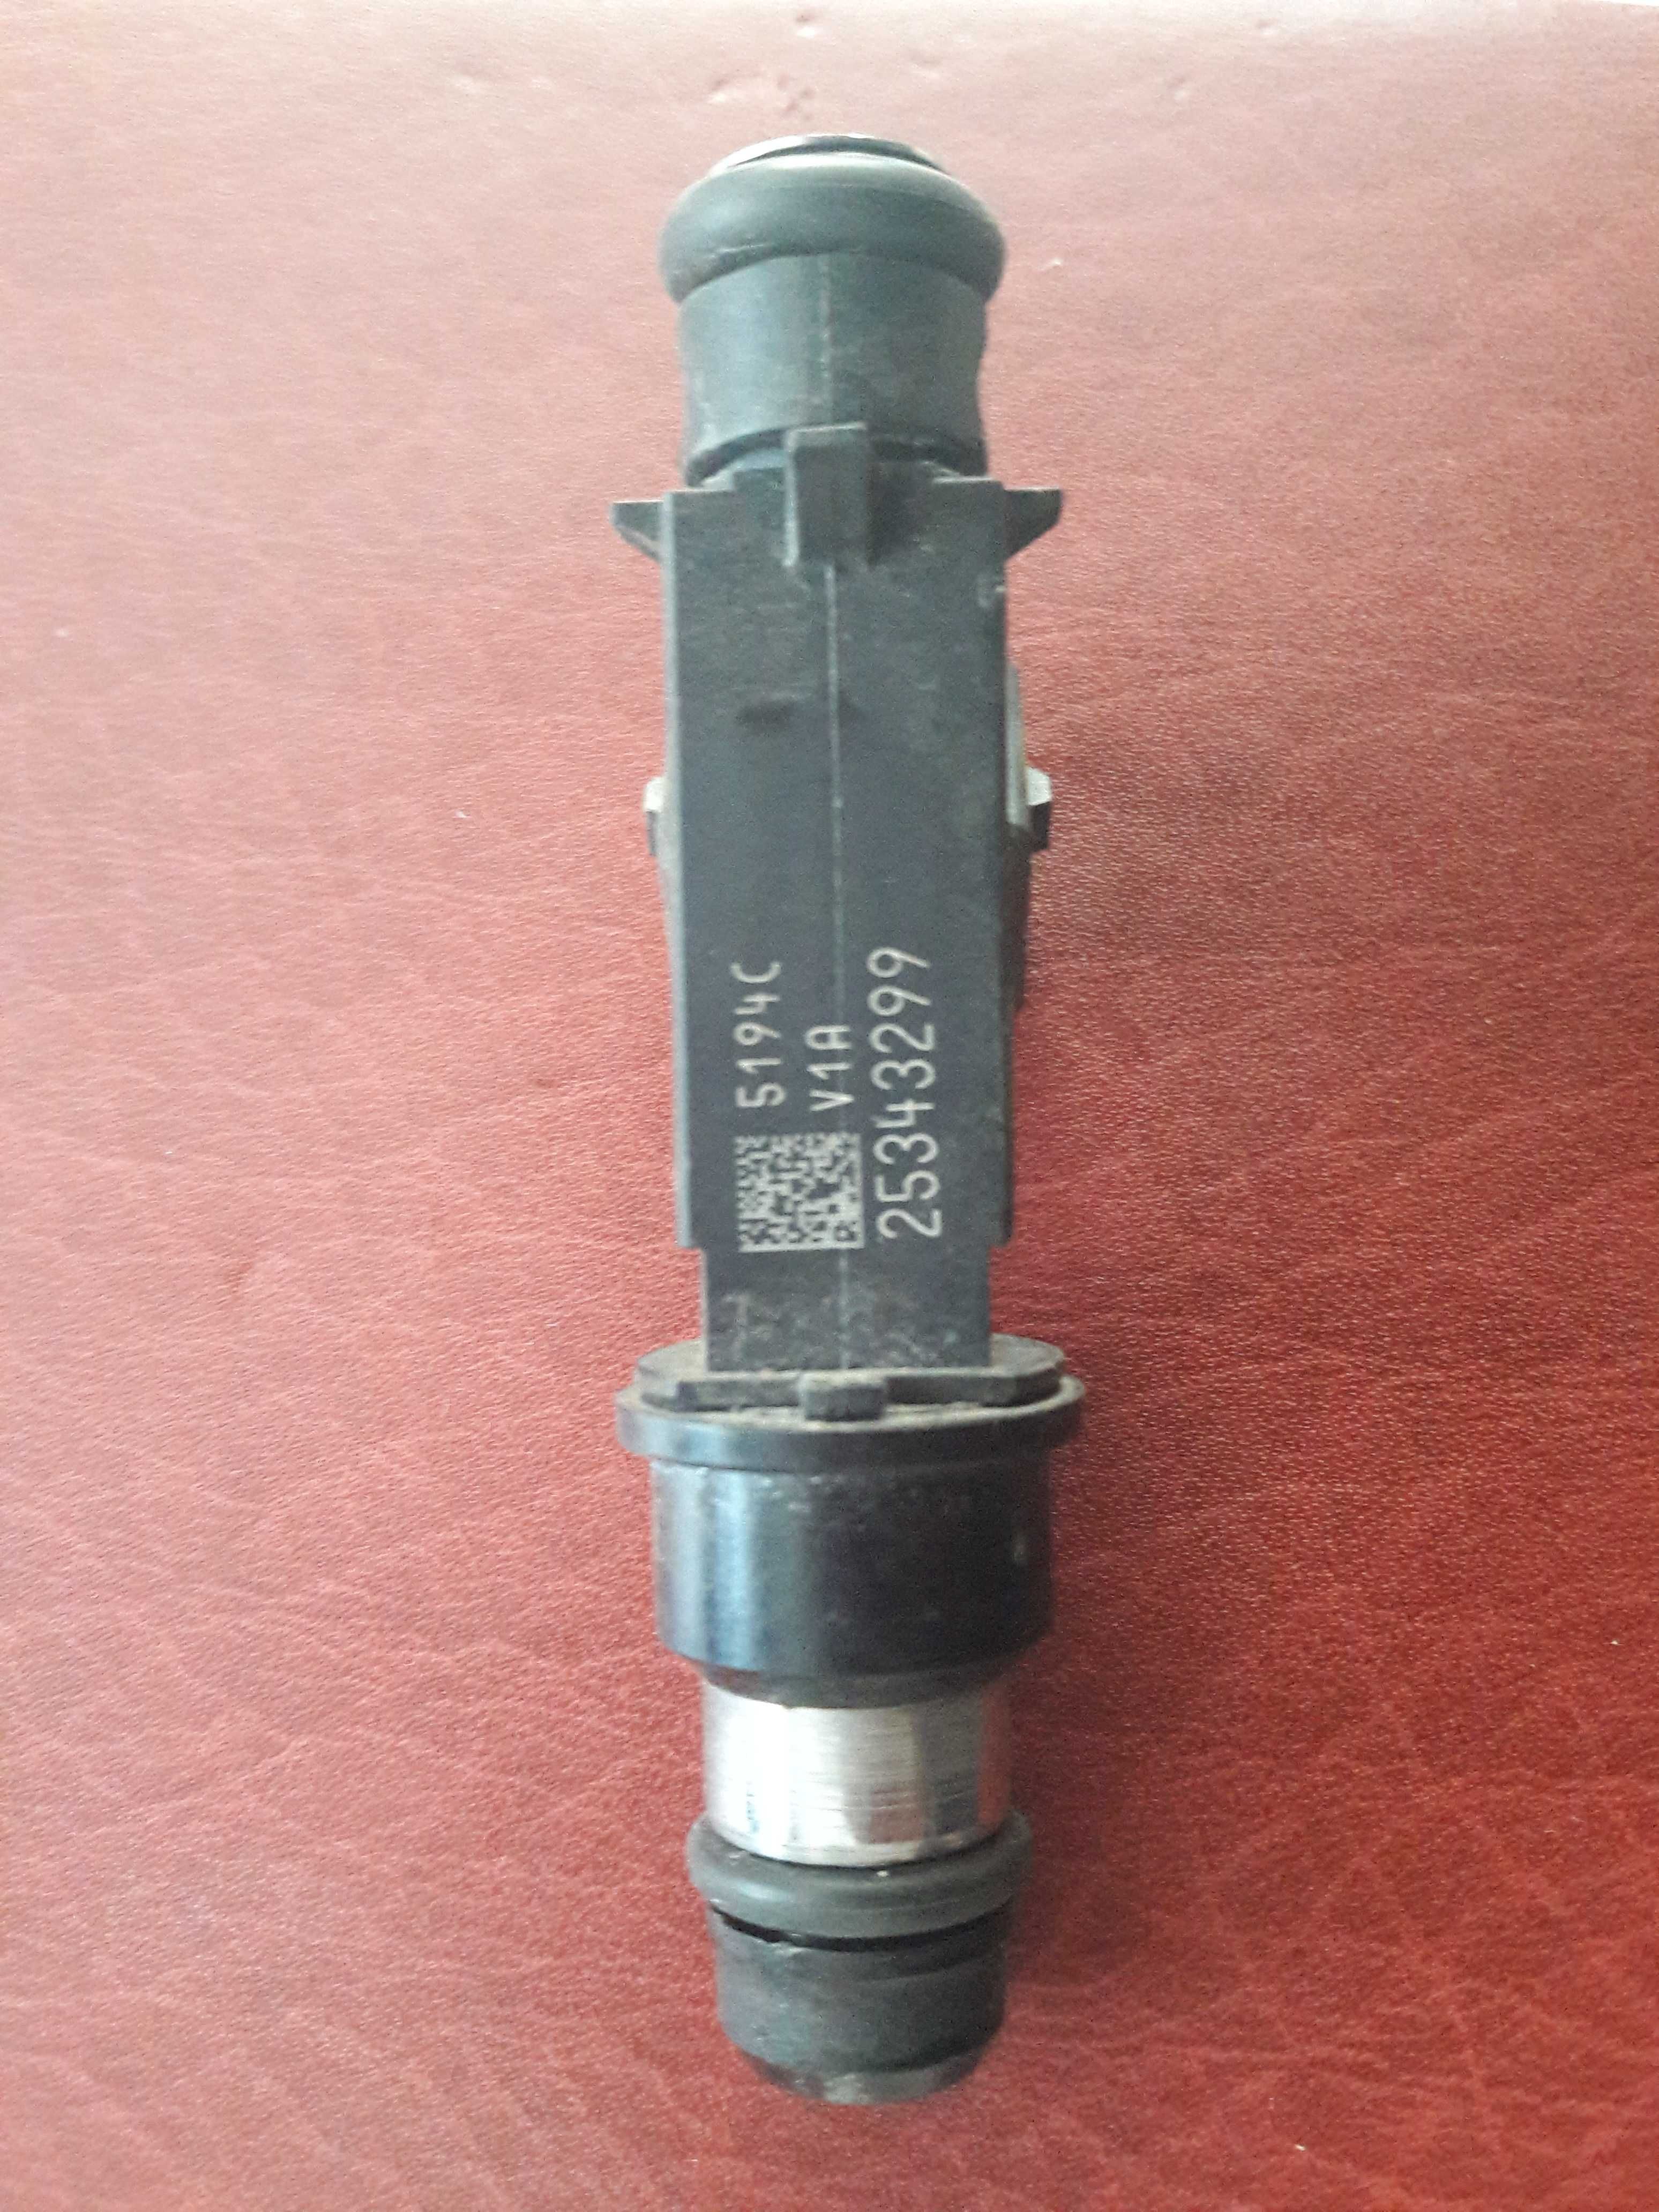 Injector Opel 1.6 16v